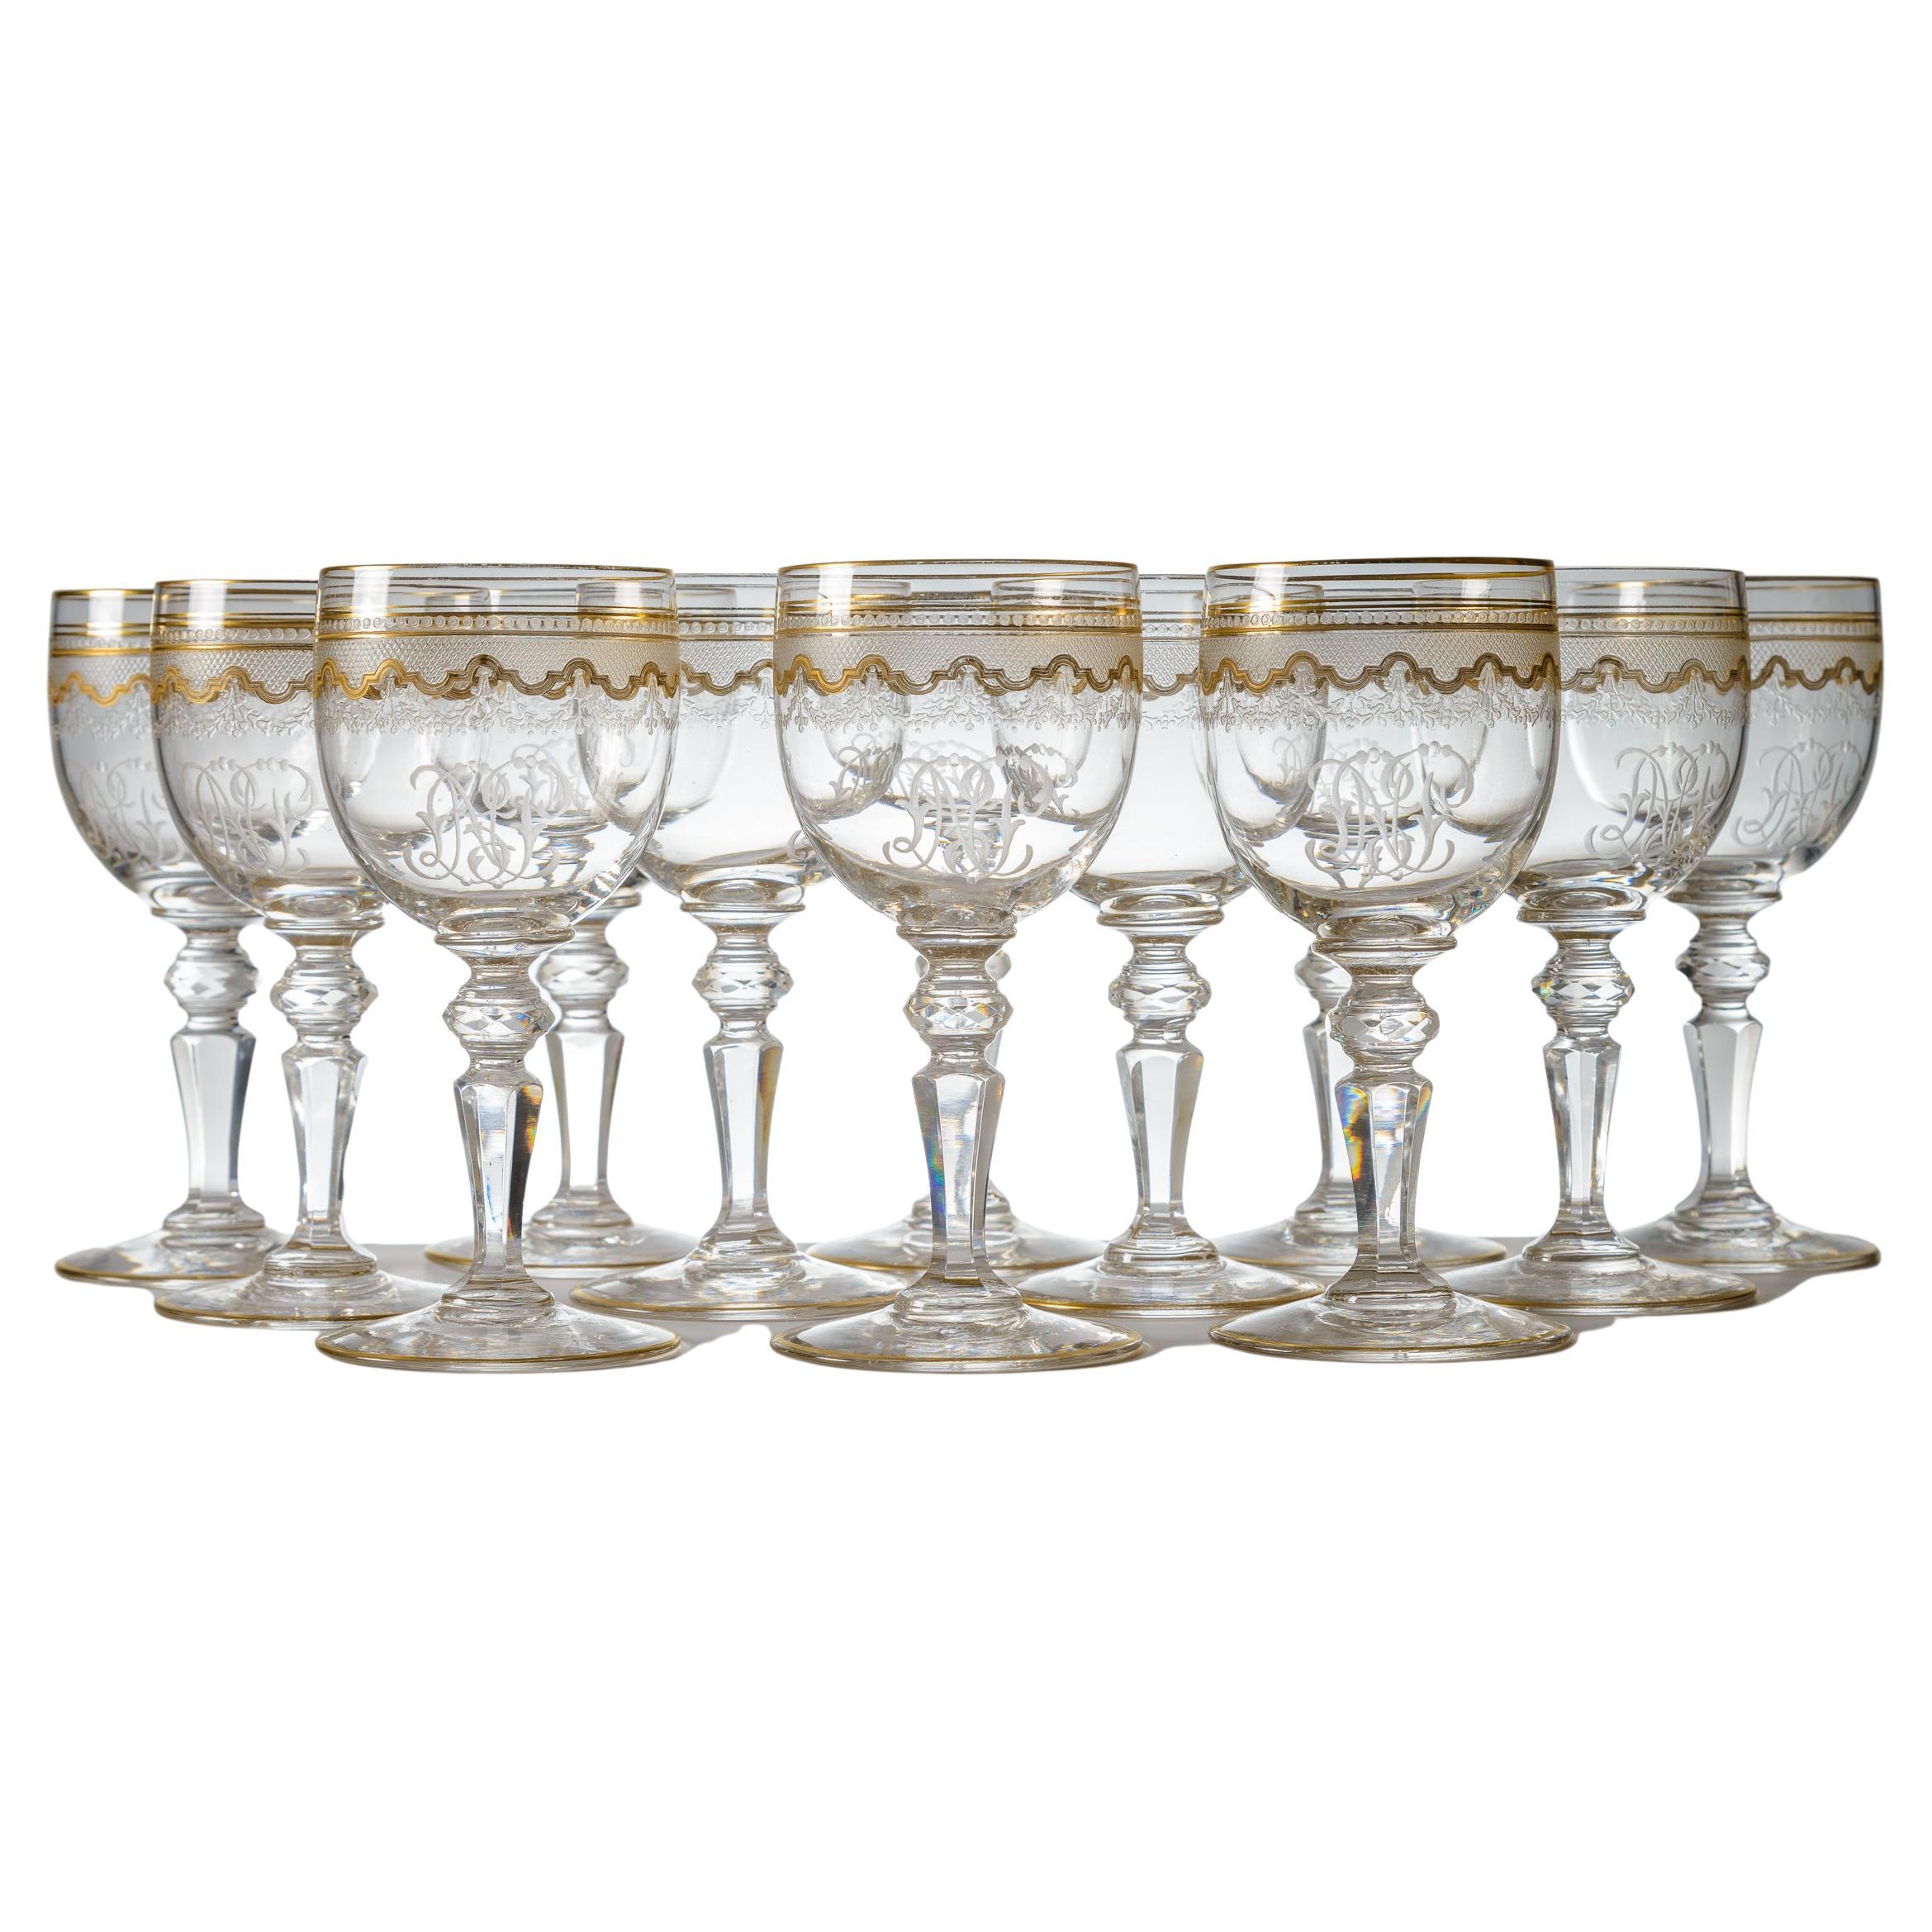 12 Saint Louis Gilt Decorated Wine Glasses With Cut Knob Stems, Antique